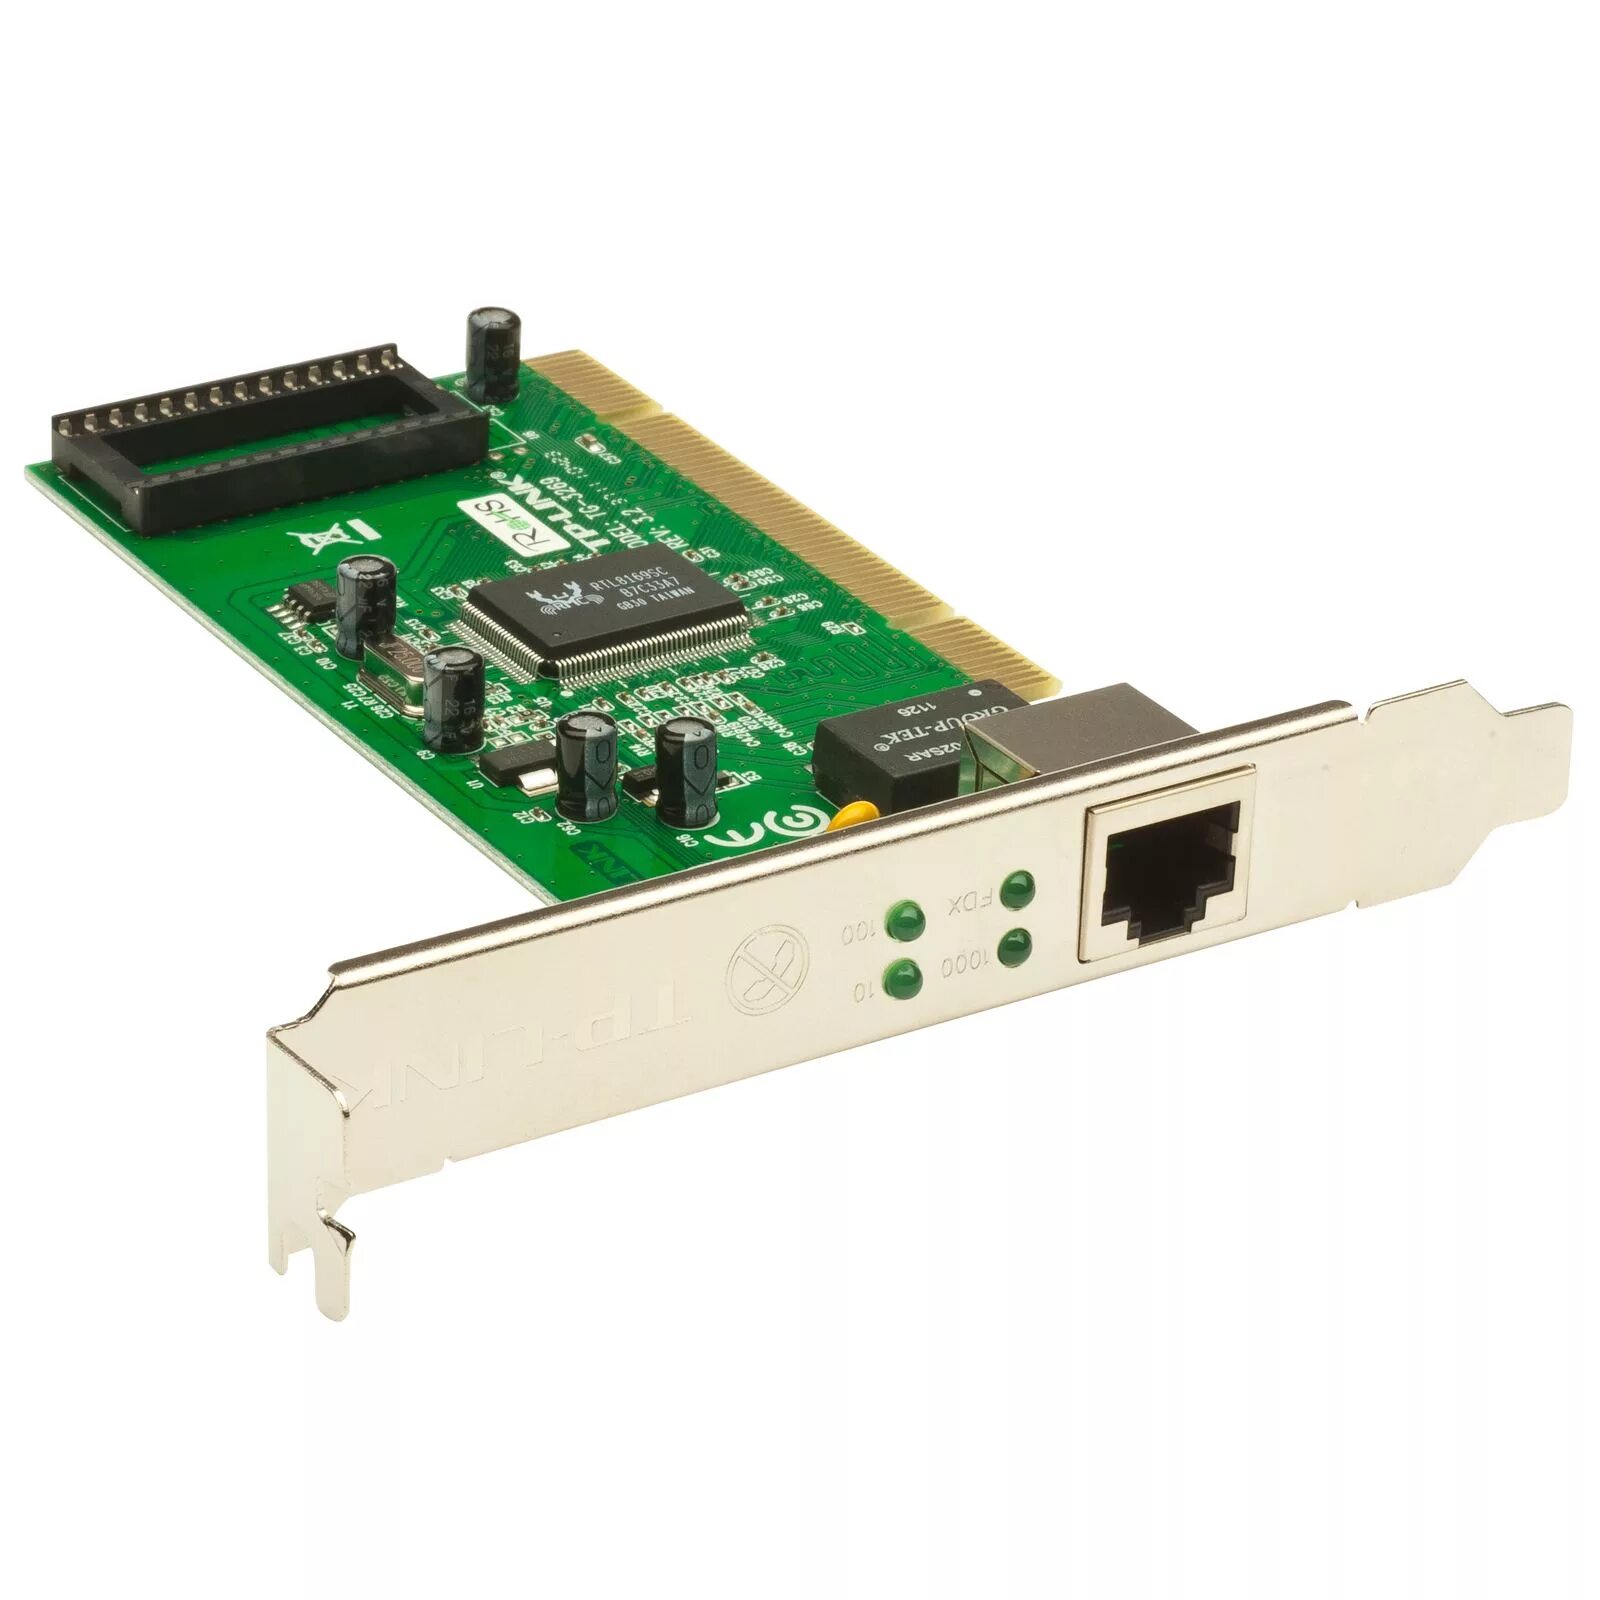 Сетевой адаптер Gigabit Ethernet d-link DGE-528t RJ-45. Gigabit PCI Network Adapter TG-3269. Сетевая карта TP-link TG-3269. Сетевая карта TP-link TG-3269 10/100/1000 Mbps PCI. Сетевые карты расширения